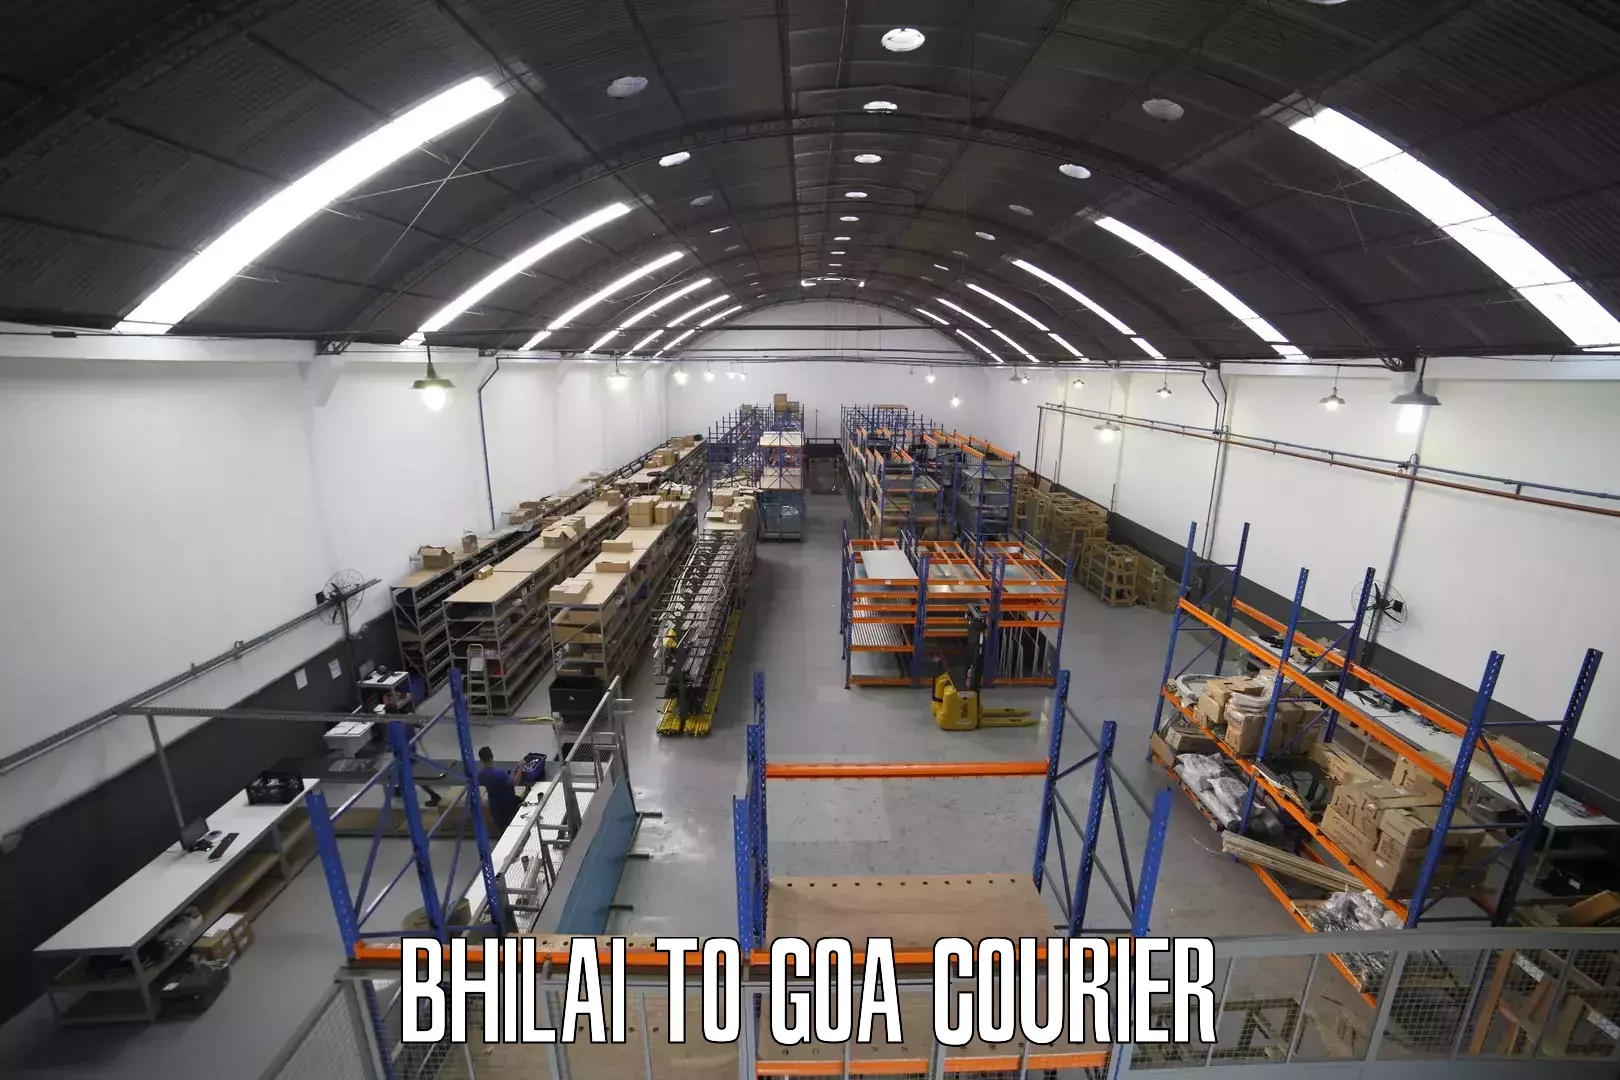 Courier service innovation Bhilai to Panjim